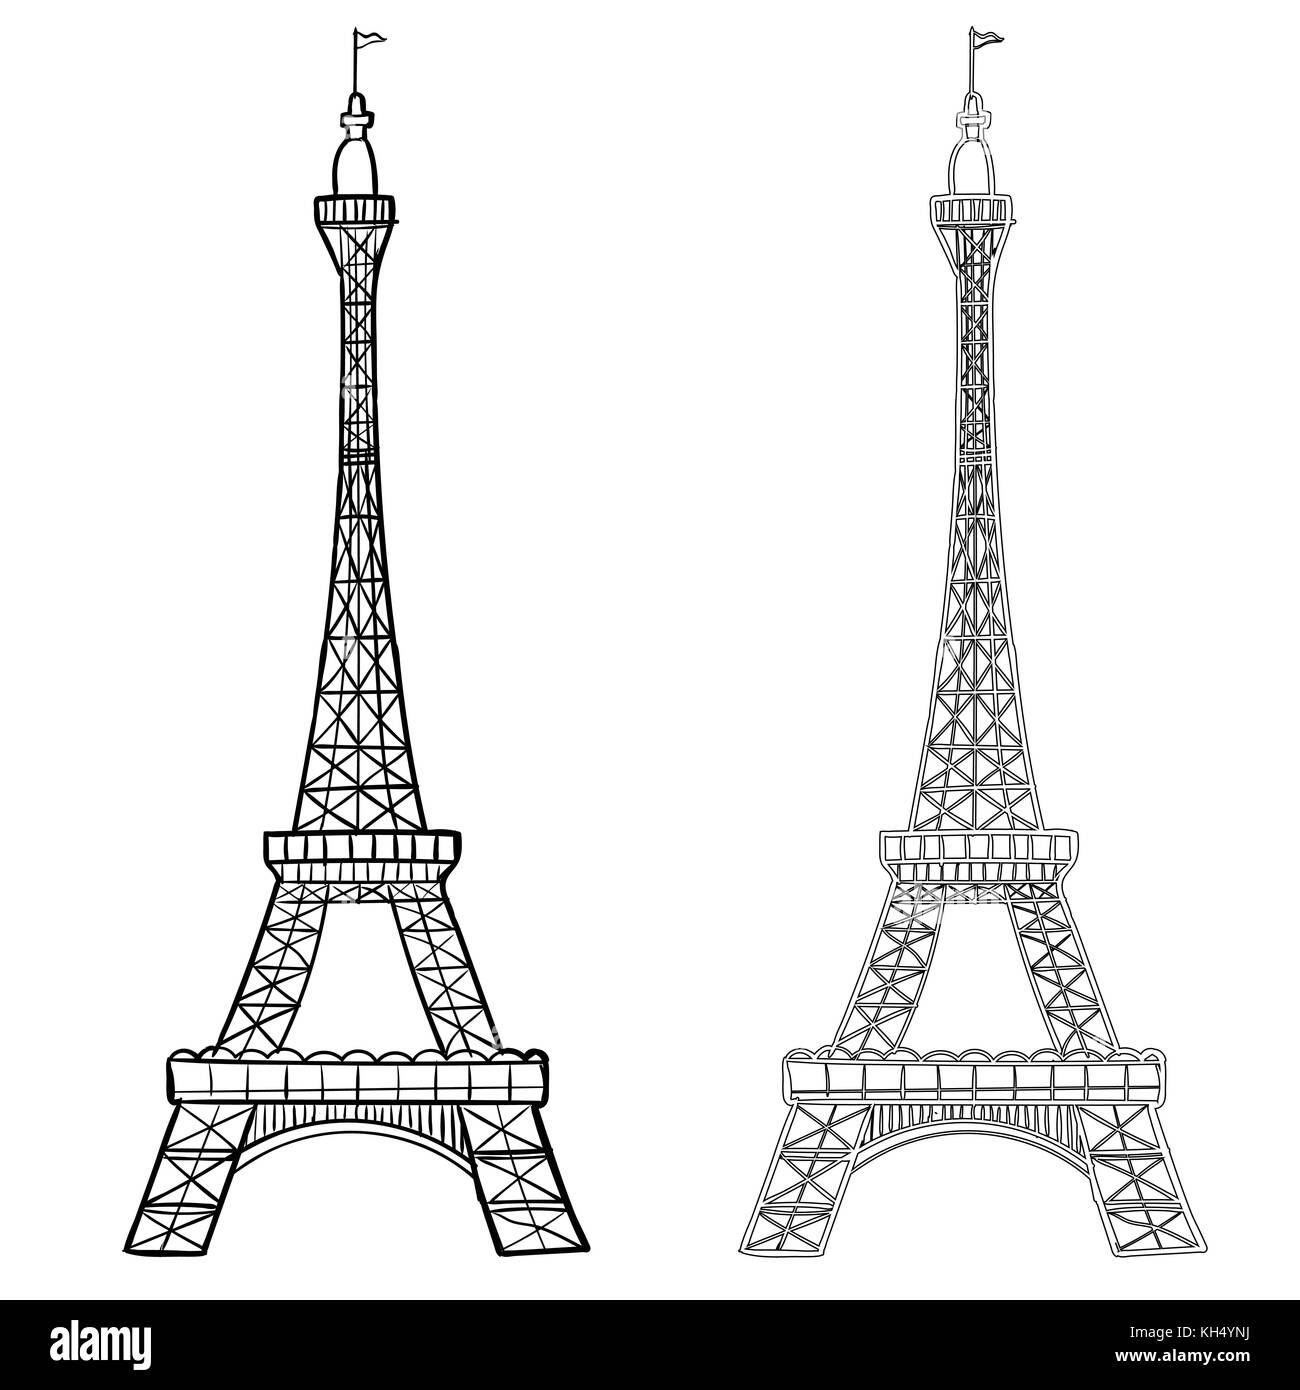 Illustrazione Della Torre Eiffel Con Due Stili Di Disegno A Mano Di Eifel Tower Semplice Schizzo In Stile Contorno Nero Isolato Su Sfondo Bianco Vettore Han Immagine E Vettoriale Alamy